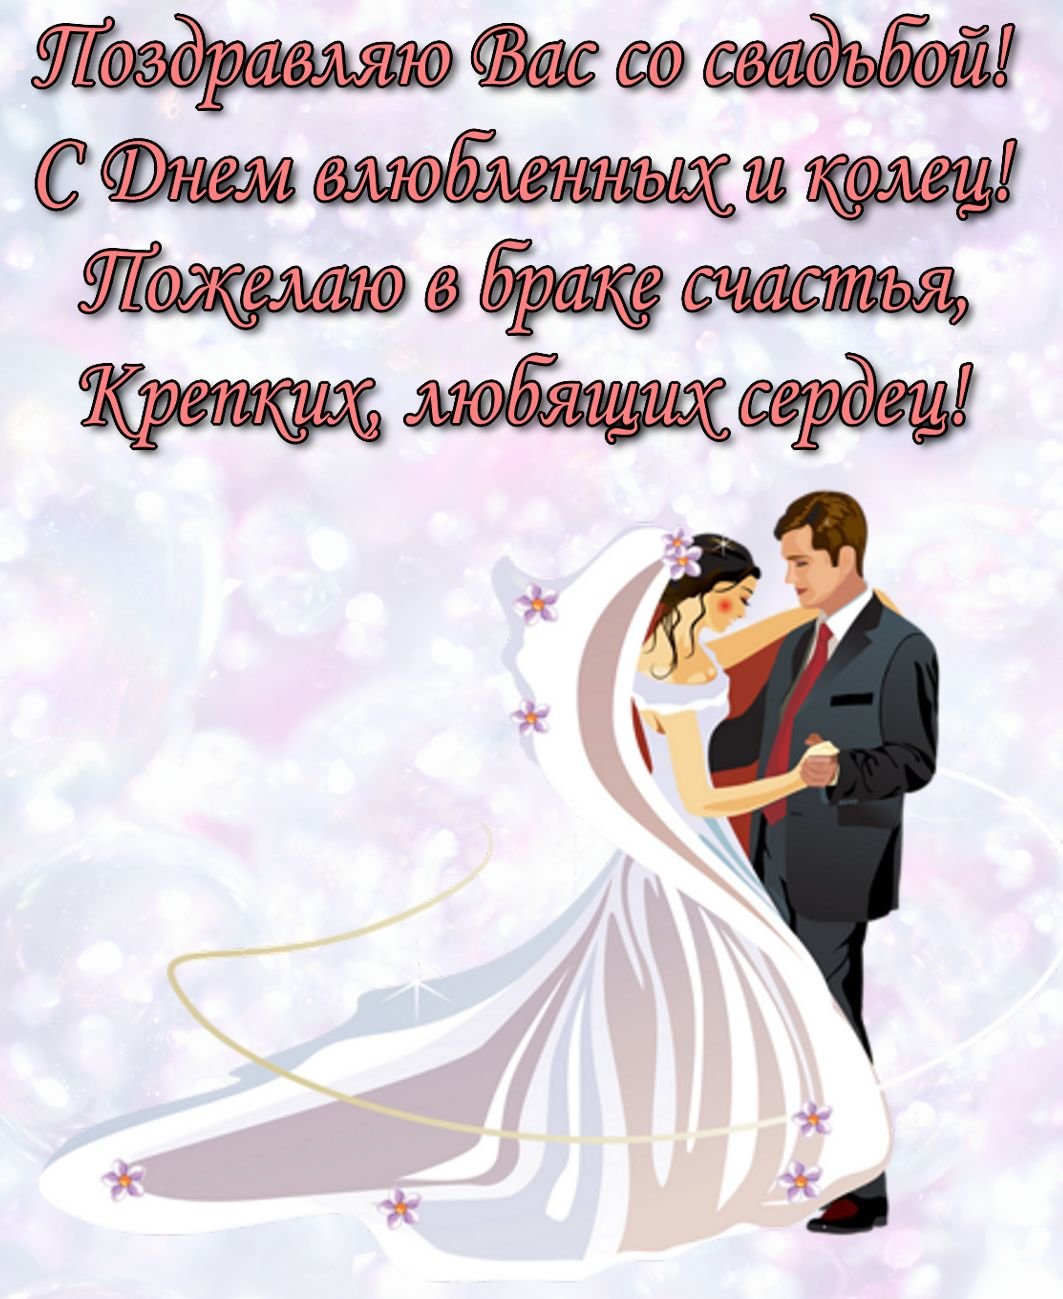 Поздравления по башкирски со свадьбой - 71 фото